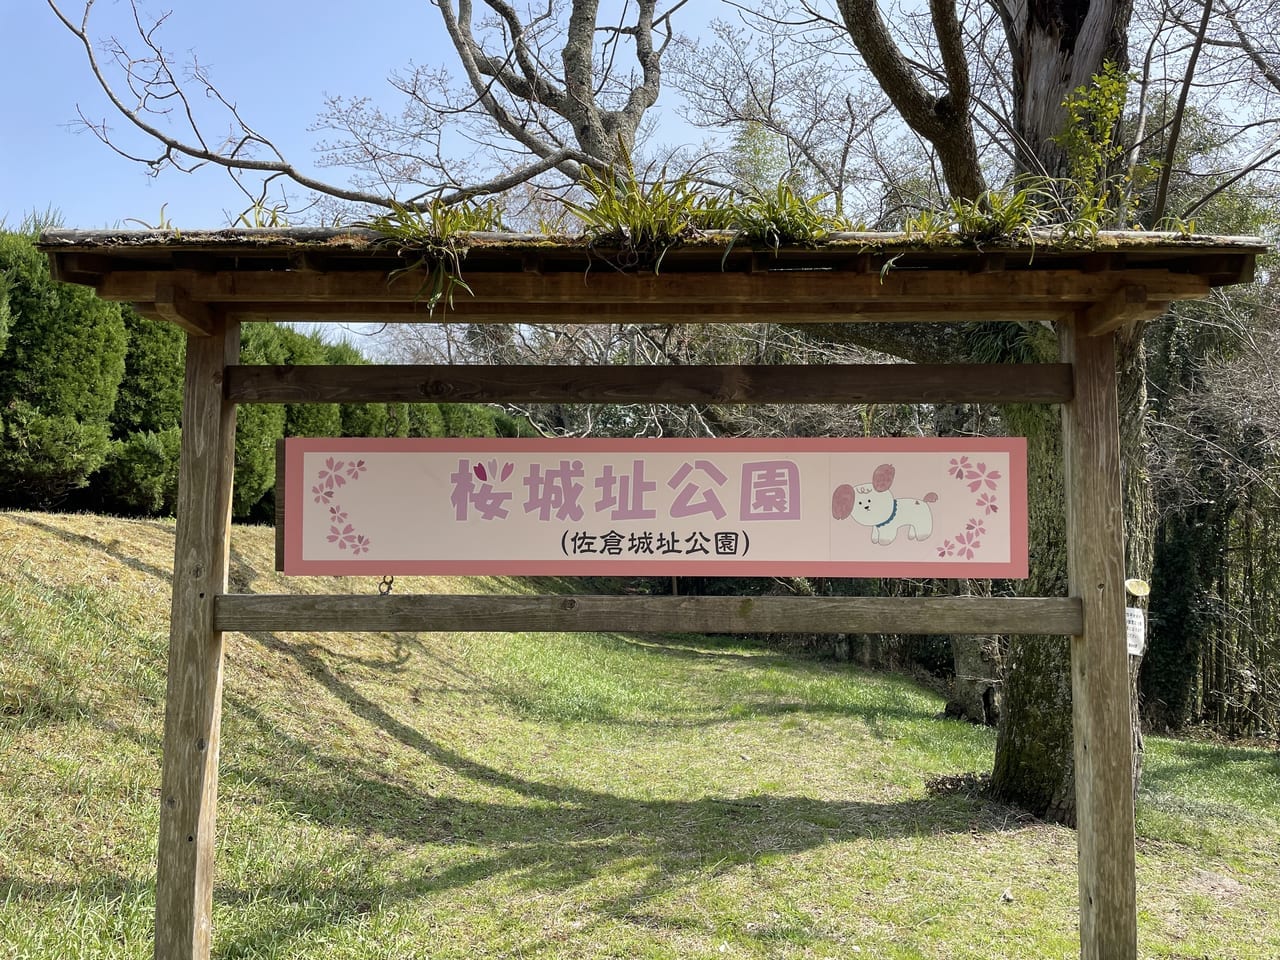 桜城址公園